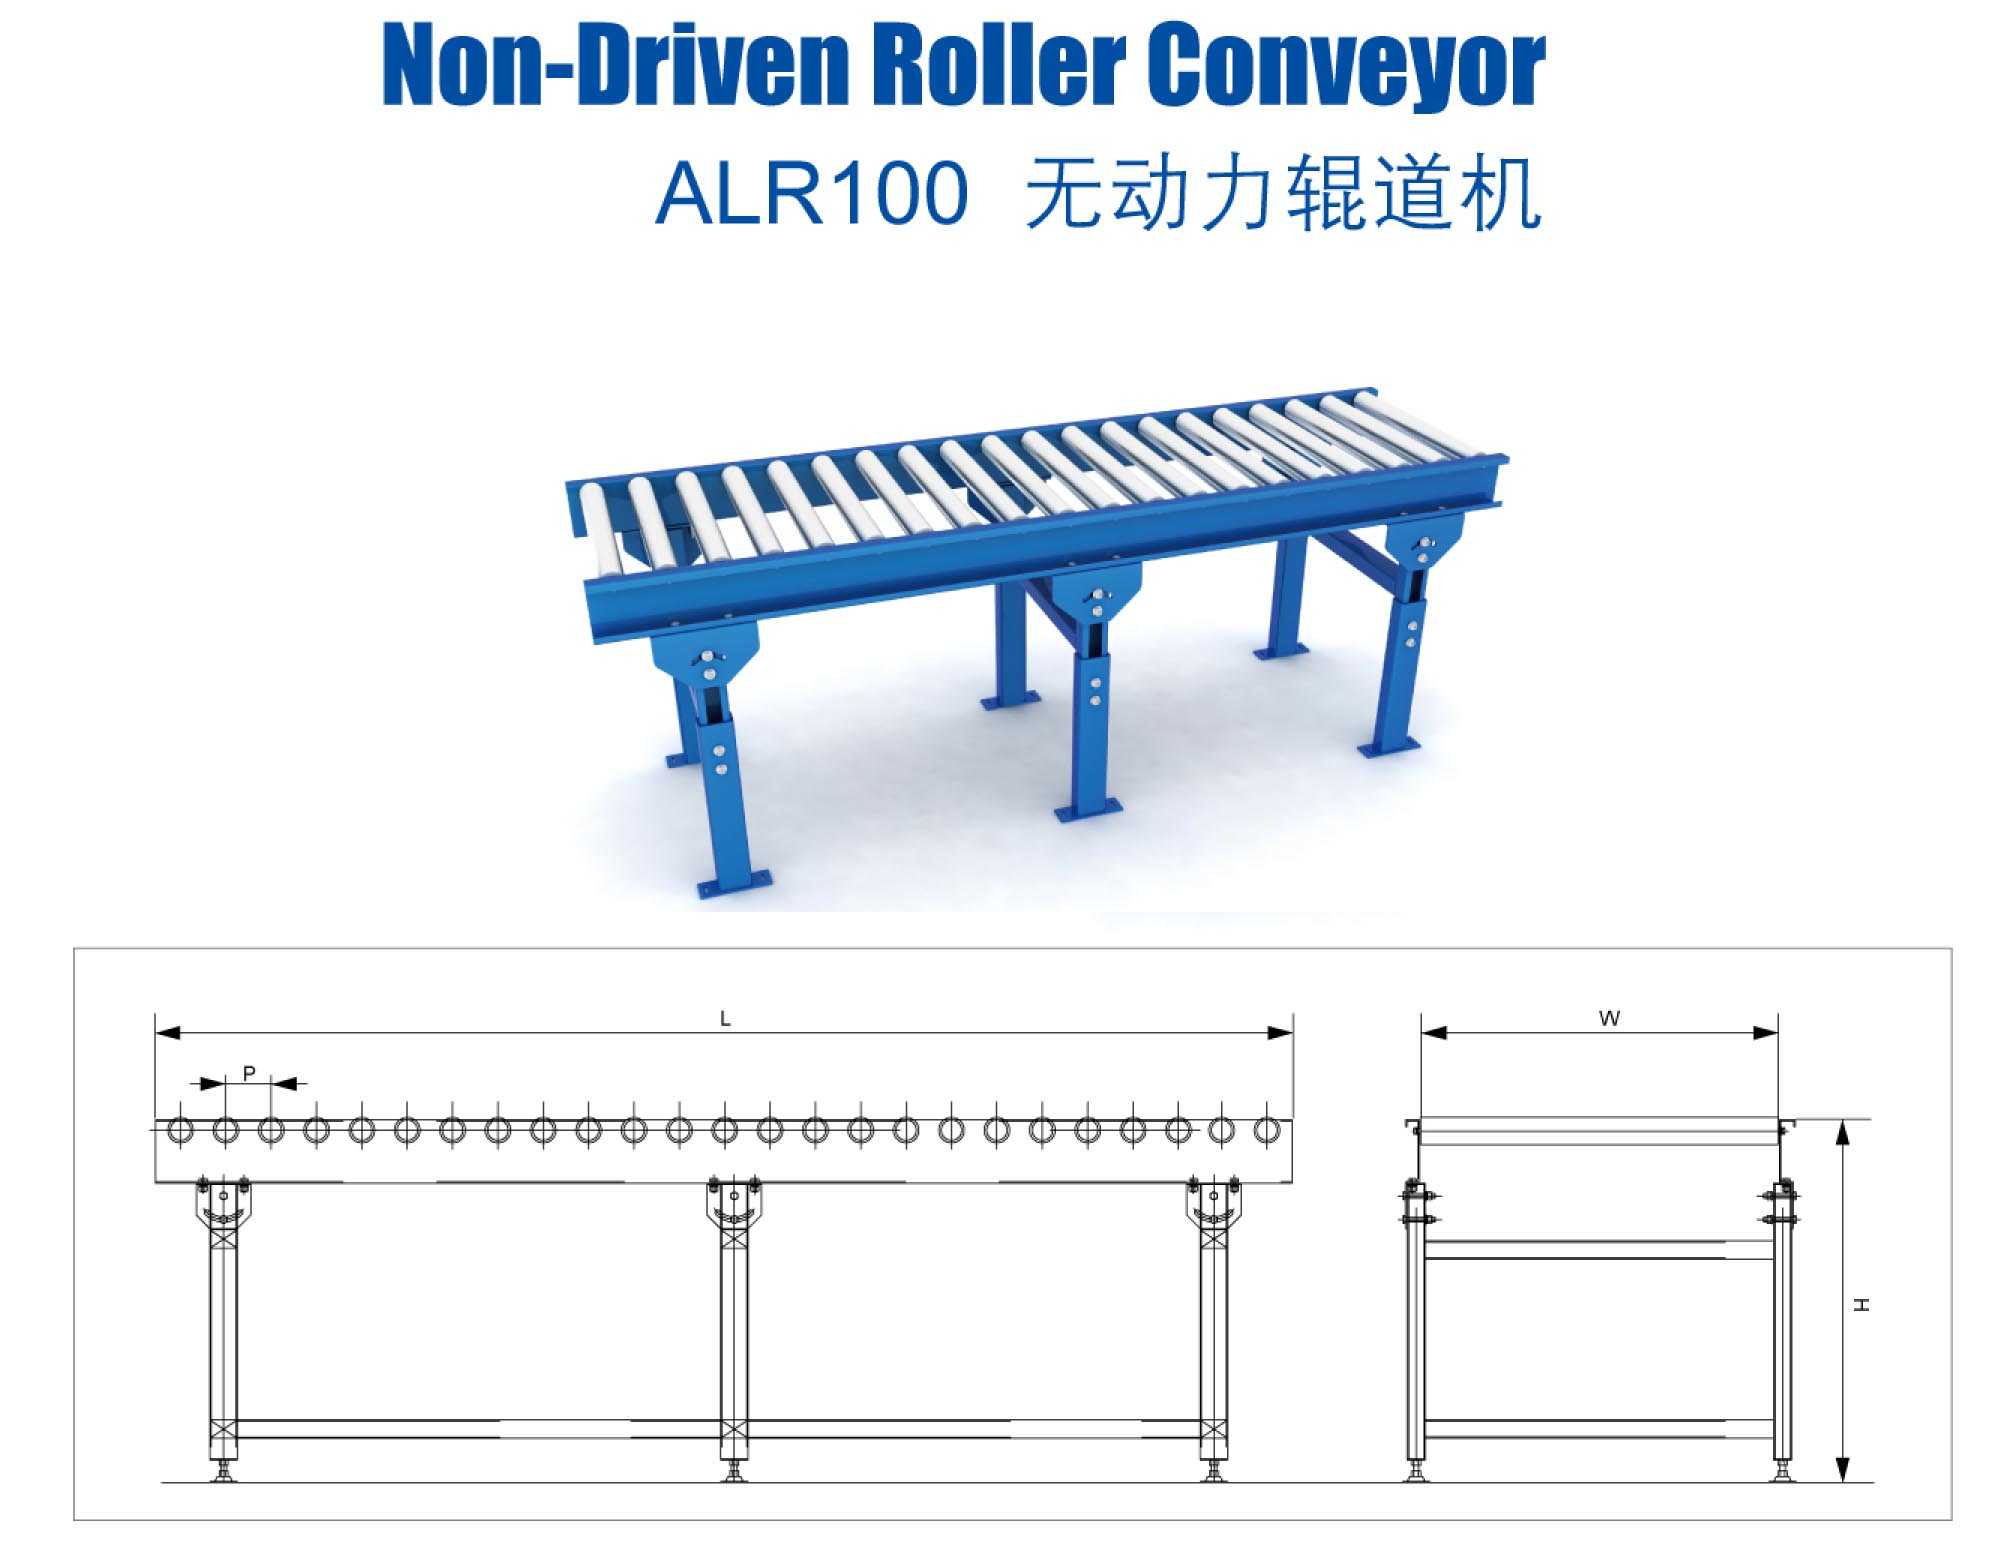 Non-driven roller conveyer